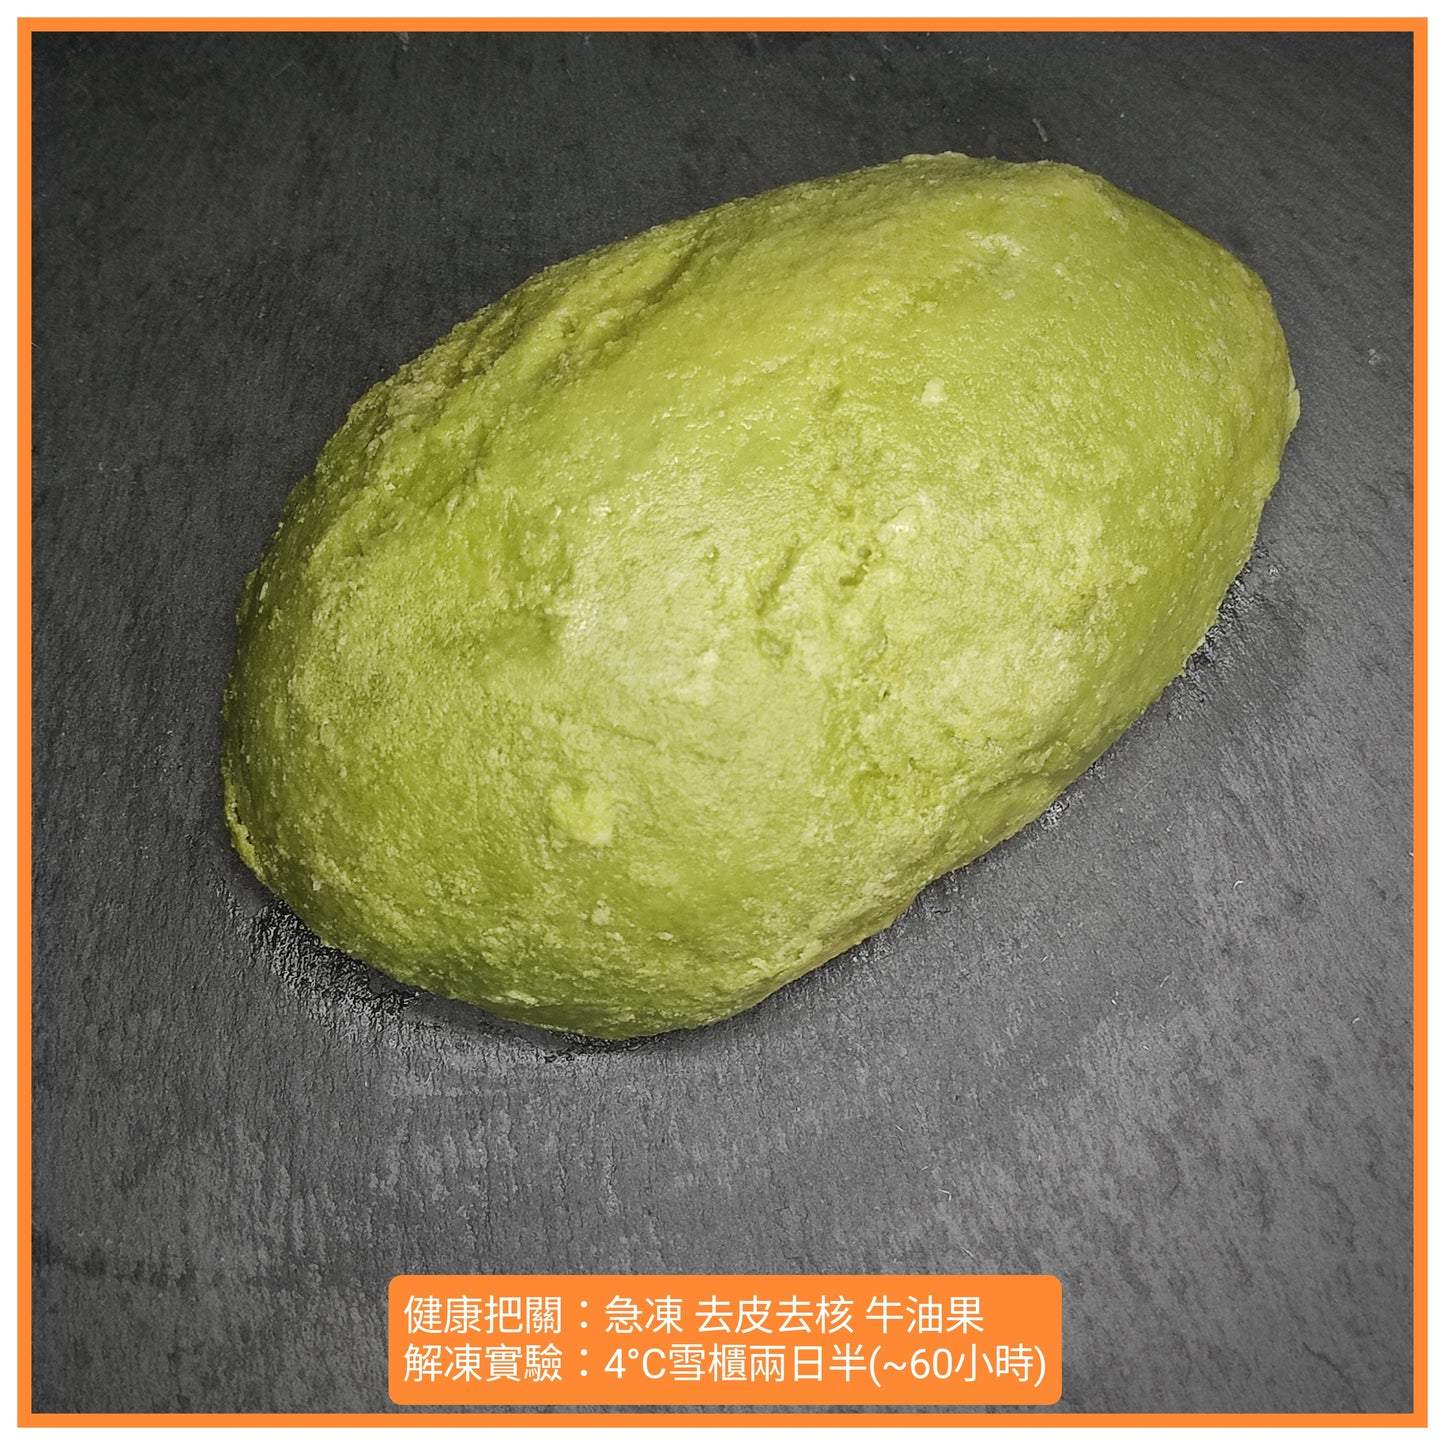 1kg Avocado half cut 比利士急凍牛油果 (去皮、去核、半開)